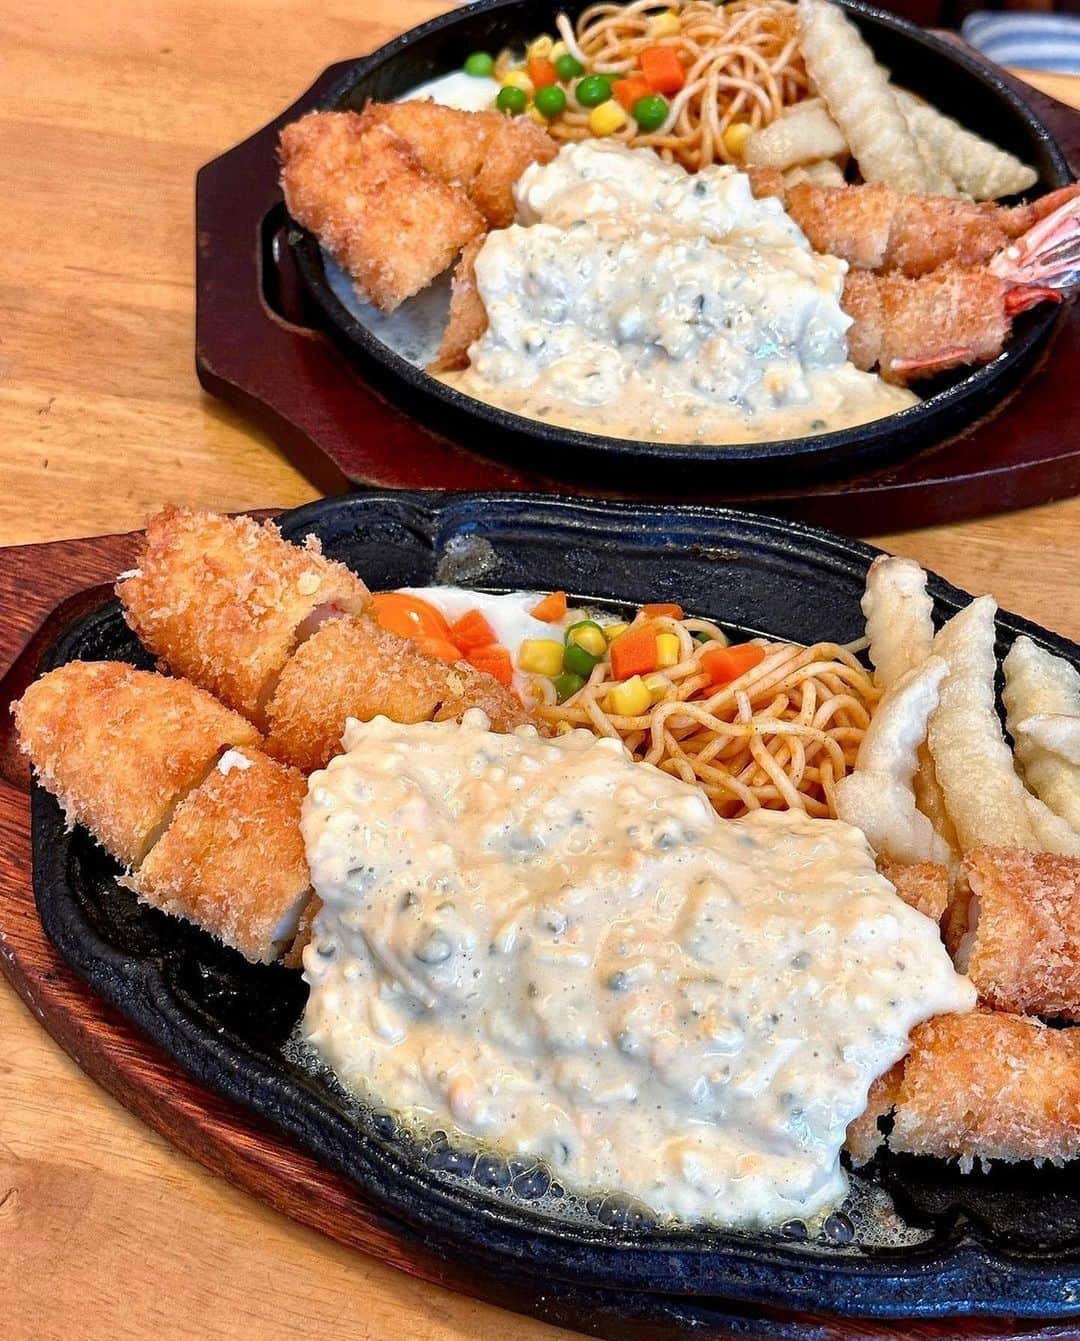 ナゴレコのインスタグラム：「📍「キッチン欧味」 ･････････････････････････････････････････  鉄板でいただく洋食グルメが必見🔥  千種にある「キッチン欧味」さんでは、ヨーロッパの伝統料理を日本風にアレンジした洋食メニューが楽しめます🍴💕  特に注目なのが熱々の鉄板にダイナミックに盛られたエビフライ定食🍤 上にたっぷりかかったタルタルソースがさらに食欲をそそります✨  さらに長さ30センチ越えのジャンボ&ジャンボエビフライ定食は、デカ盛りレベルのボリューム感で食べ応えもバッチリ💯  胃袋に自信がある人はぜひジャンボ&ジャンボに挑戦してみて🔥  ひとくちサイズにカットされていて食べやすいのもポイント🥢 ハンバーグ定食なども他の洋食メニューも気になります✨ みんなもぜひ行ってみてね🏃‍♂️  ┈┈┈┈┈┈┈┈┈┈┈┈┈┈┈┈┈┈┈  🍤名古屋のローカルグルメメディア【ナゴレコ】🍤  名古屋人がレコメンドする本当に美味しい名古屋めし🥢 これさえフォローしておけば、街の流行りがきっとわかる◎ 100名以上の編集部で作り上げる、名古屋エリア最大規模のグルメメディアです📝  他の投稿はこちらから👉 @nagoya_food  ┈┈┈┈┈┈┈┈┈┈┈┈┈┈┈┈┈┈┈  素敵な投稿にタグ付けしていただきありがとうございます✨  #ナゴレコ で、あなたの投稿をリポスト！ webサイト「ナゴレコ」もチェックしてね👀 ･････････････････････････････････････････  ☞ photo by （ @nagoya_kousuke ）さん  ☆☆☆ ⁡ 離婚して母子家庭となってからは、母の給料日の夜は外食をするのが毎月恒例でしたっ(; ･`д･´) ⁡ いつも三鷹駅近くにあるトンカツ屋、お値打ち寿司屋、そして『バンビ』という名の洋食屋から選択っ( ✧Д✧) ｶｯ!! ⁡ ハンバーグや海老フライにミニオムライスっ(; ･`д･´)盛り付けにはナポリタンが入り…なんか昭和感満載でしたっ(๑•̀ㅂ•́)و✧ ⁡ 店内も洋食屋というより、喫茶店という感じでフォークやナイフより箸が似合う感じっ(థ公థ｡) ⁡ お会計は母から1万円札を渡され、自分が大金を預かり自慢気に会計をしてましたっ( ✧Д✧) ｶｯ!! ⁡ ⁡ 毎月恒例の給料日外食…一生懸命に働き、ビール一本を飲み、帰りにスイーツを買って帰宅っ(; ･`д･´) ⁡ 自分は給料日を楽しみにしてましたが、母は幸せだったのでしょうかっ( ✧Д✧) ｶｯ!!  子供を育てるのに懸命な生活… ⁡ 亡くなった後から…よくそんなことを考えてしまいますっ(థ公థ｡) ⁡ もっと何かしてあげれば…って思いますが…自分的には、こうして思い返す事も大切な親孝行なのだと思っていますっ( ✧Д✧) ｶｯ!! ⁡ ⁡ ⁡ ⁡ 【 キッチン欧味 】 @kitchen_ohmi さん ⁡ 街中にある大人気の洋食屋さんっ( ✧Д✧) ｶｯ!!ご飯の量も多いので男性からも大人気っ(థ公థ｡) ⁡ 週末は駐車場待ちや行列は当たり前ですっ(๑•̀ㅂ•́)و✧ ⁡ ▪️ジャンボエビフライ定食 2700円 ▪️ジャンボ&ジャンボエビフライ定食 2980円 ⁡ 今回はお初のジャンボ&ジャンボに挑戦っ(; ･`д･´)長さは約30㎝のロングサイズっ(థ公థ｡) ⁡ トップ画の奥側が25㎝のジャンボでございますっ( ✧Д✧) ｶｯ!! ⁡ 揚げたてのエビフライは食べやすいようにカットされ、熱々の鉄板に乗ってますっ( ´థ౪థ) ⁡ 付け合わせのナポリタン、そして豪快にかけられたタルタルが食欲をそそりますっ(๑•̀ㅂ•́)و✧ ⁡ もうこれ…名古屋めしだがねーっ(๑•̀ㅂ•́)و✧ ⁡ しばらく海老はいらないってぐらいの大満足っ( ✧Д✧) ｶｯ!! ⁡ でもまた食べたくなって再訪しちゃうんだよねーっ(థ公థ｡)ご馳走様でしたっ！ ⁡ ⁡ ☆☆☆☆☆☆☆☆☆☆☆☆☆☆☆☆☆☆☆☆☆ ⁡ ▪️キッチン欧味 ▪️名古屋市千種区千種1-9-23 ▪️050-5457-2645 ▪️11:00〜15:00、17:00〜21:00 ▪️月曜定休(祝の場合は火曜) ▪️駐車場有り ⁡ ◉ お店の都合により変更があるかもしれません。行かれる場合は定休日や営業時間の再確認を！ ⁡ ☆☆☆☆☆☆☆☆☆☆☆☆☆☆☆☆☆☆☆☆☆ ⁡」